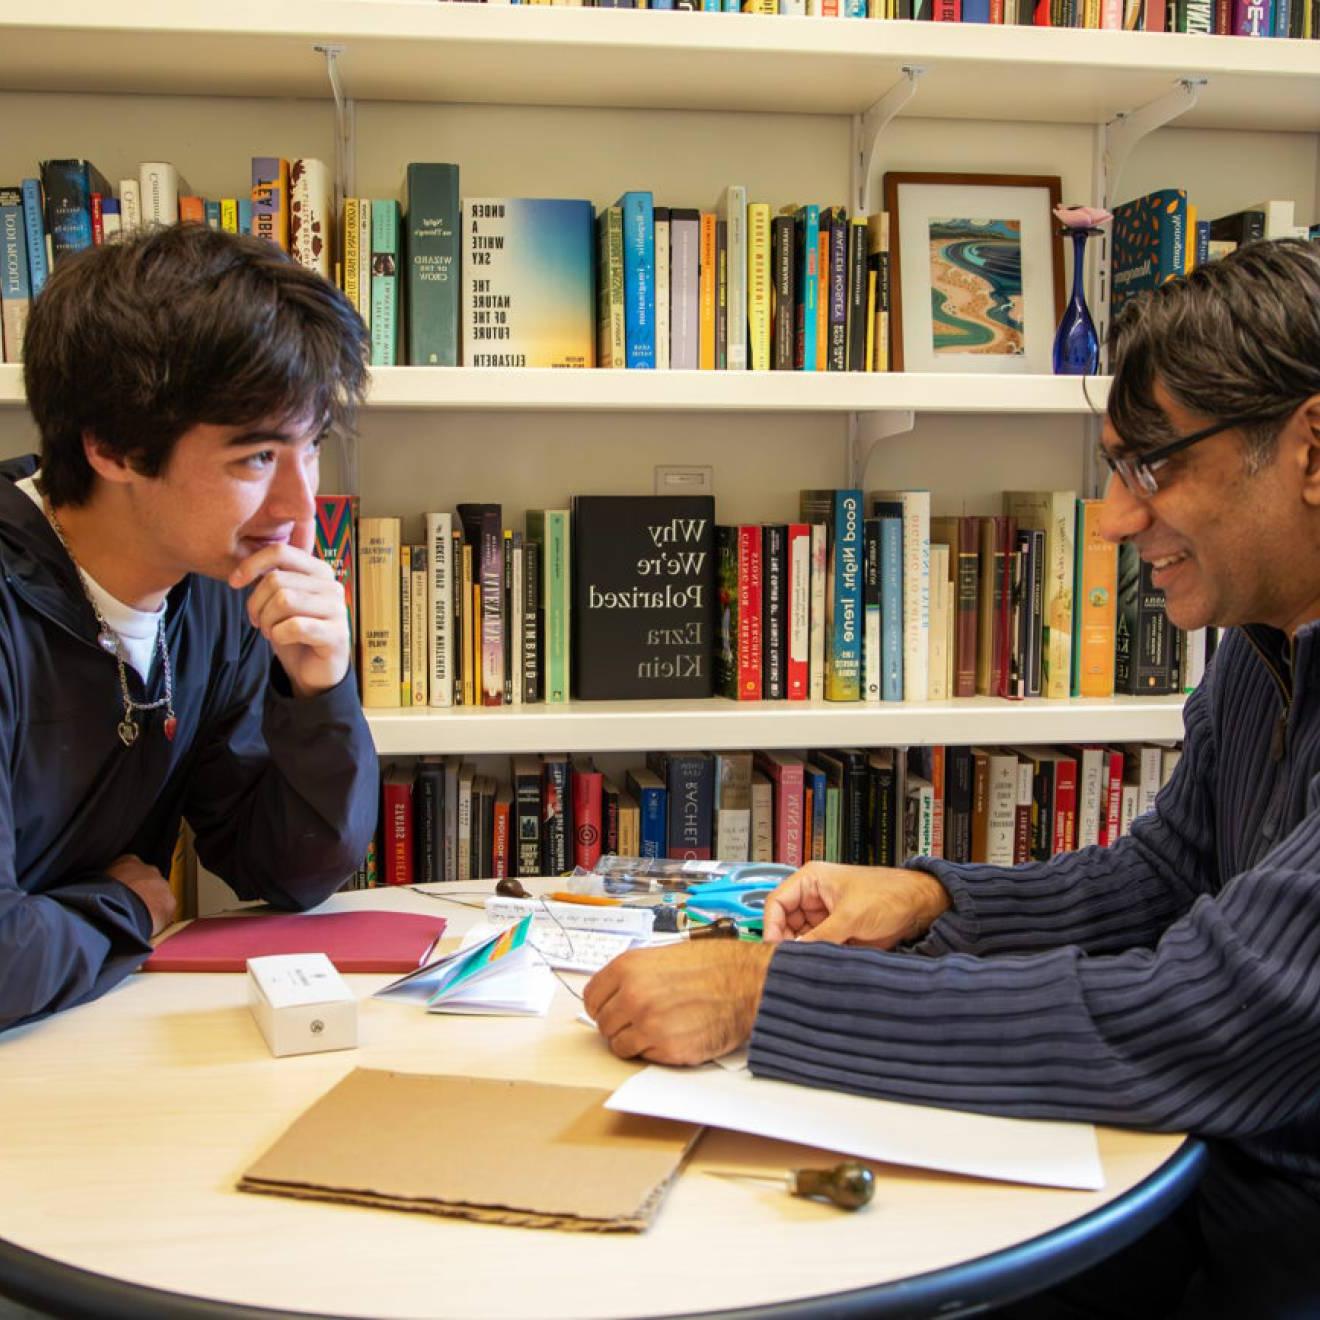 一个教授年龄的男人和一个学生年龄的男人坐在一个书架前的圆桌旁, 面对面讨论. 